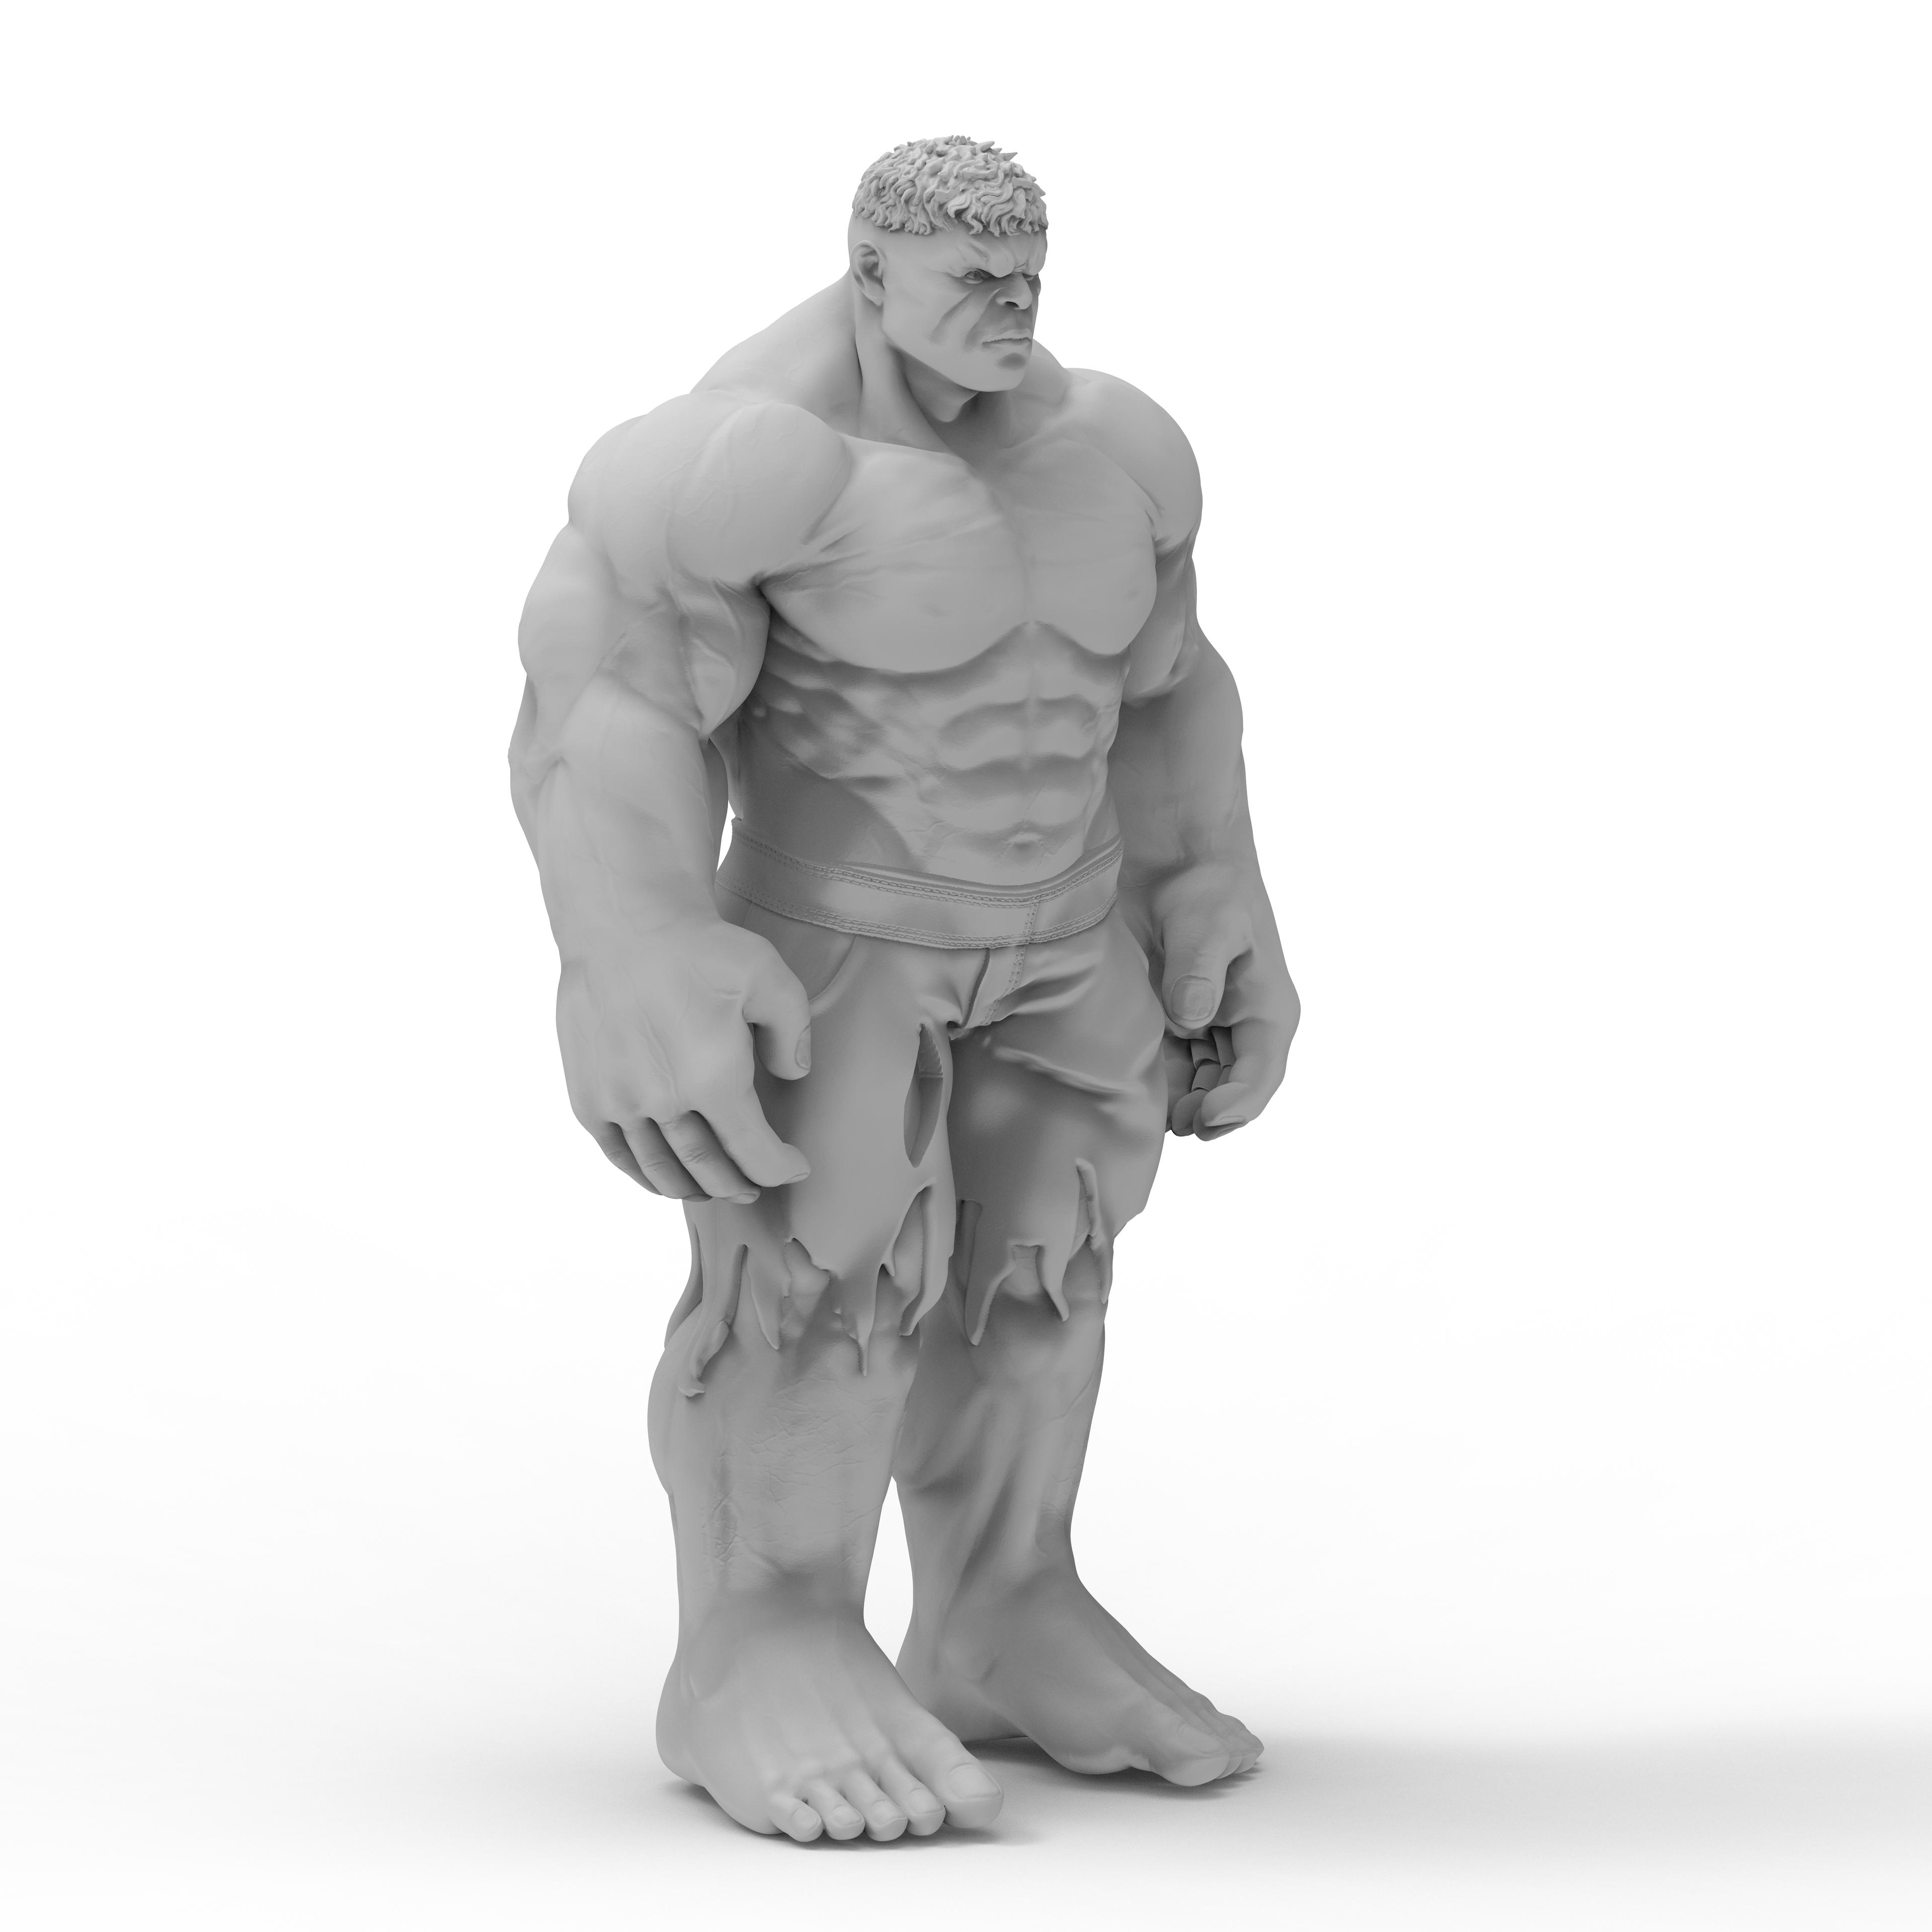 Hulk.stl 3d model